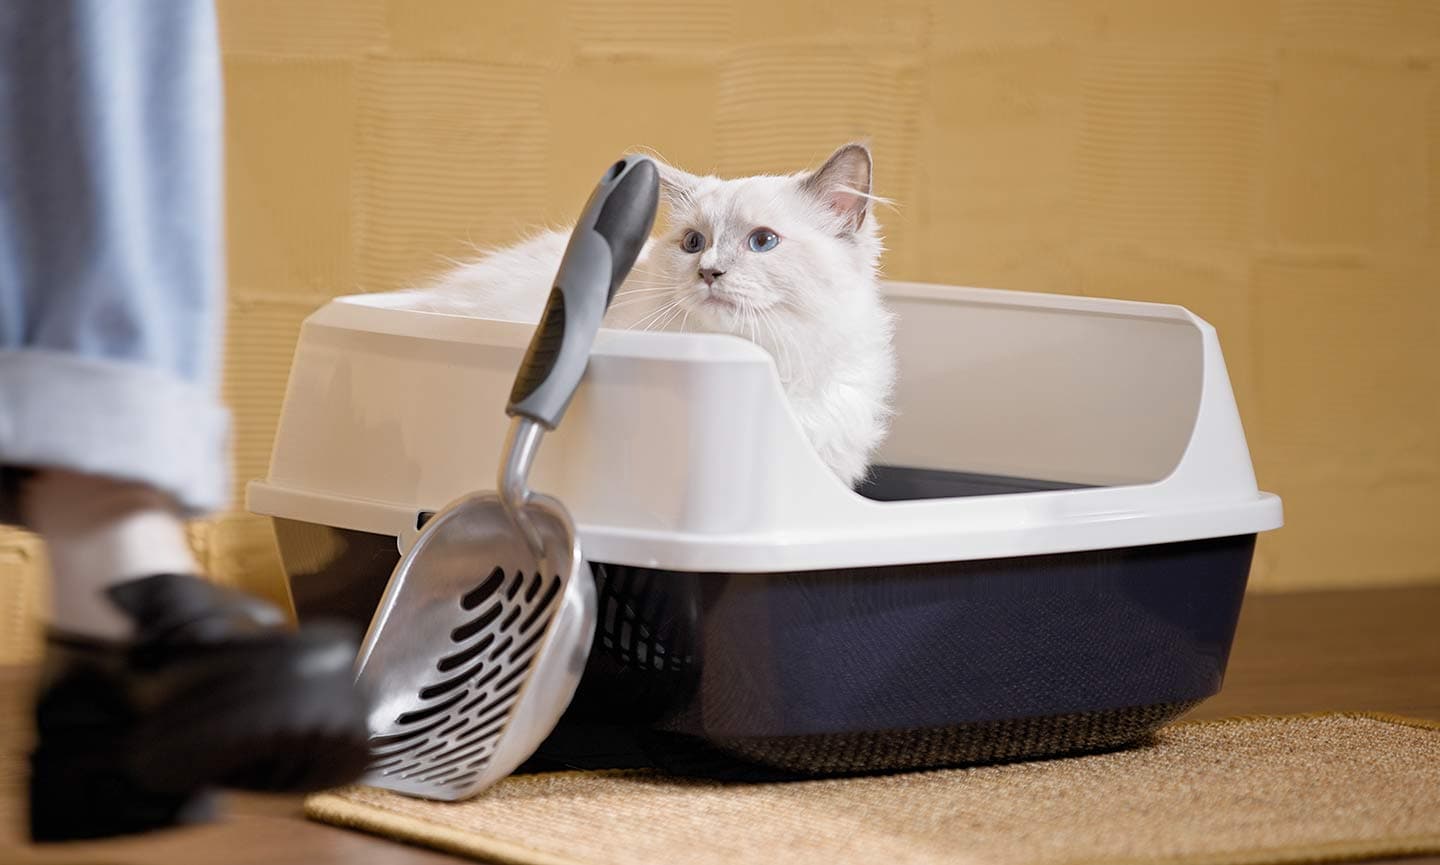 Litter Training Kittens: Easy Tips for Cat Potty Training